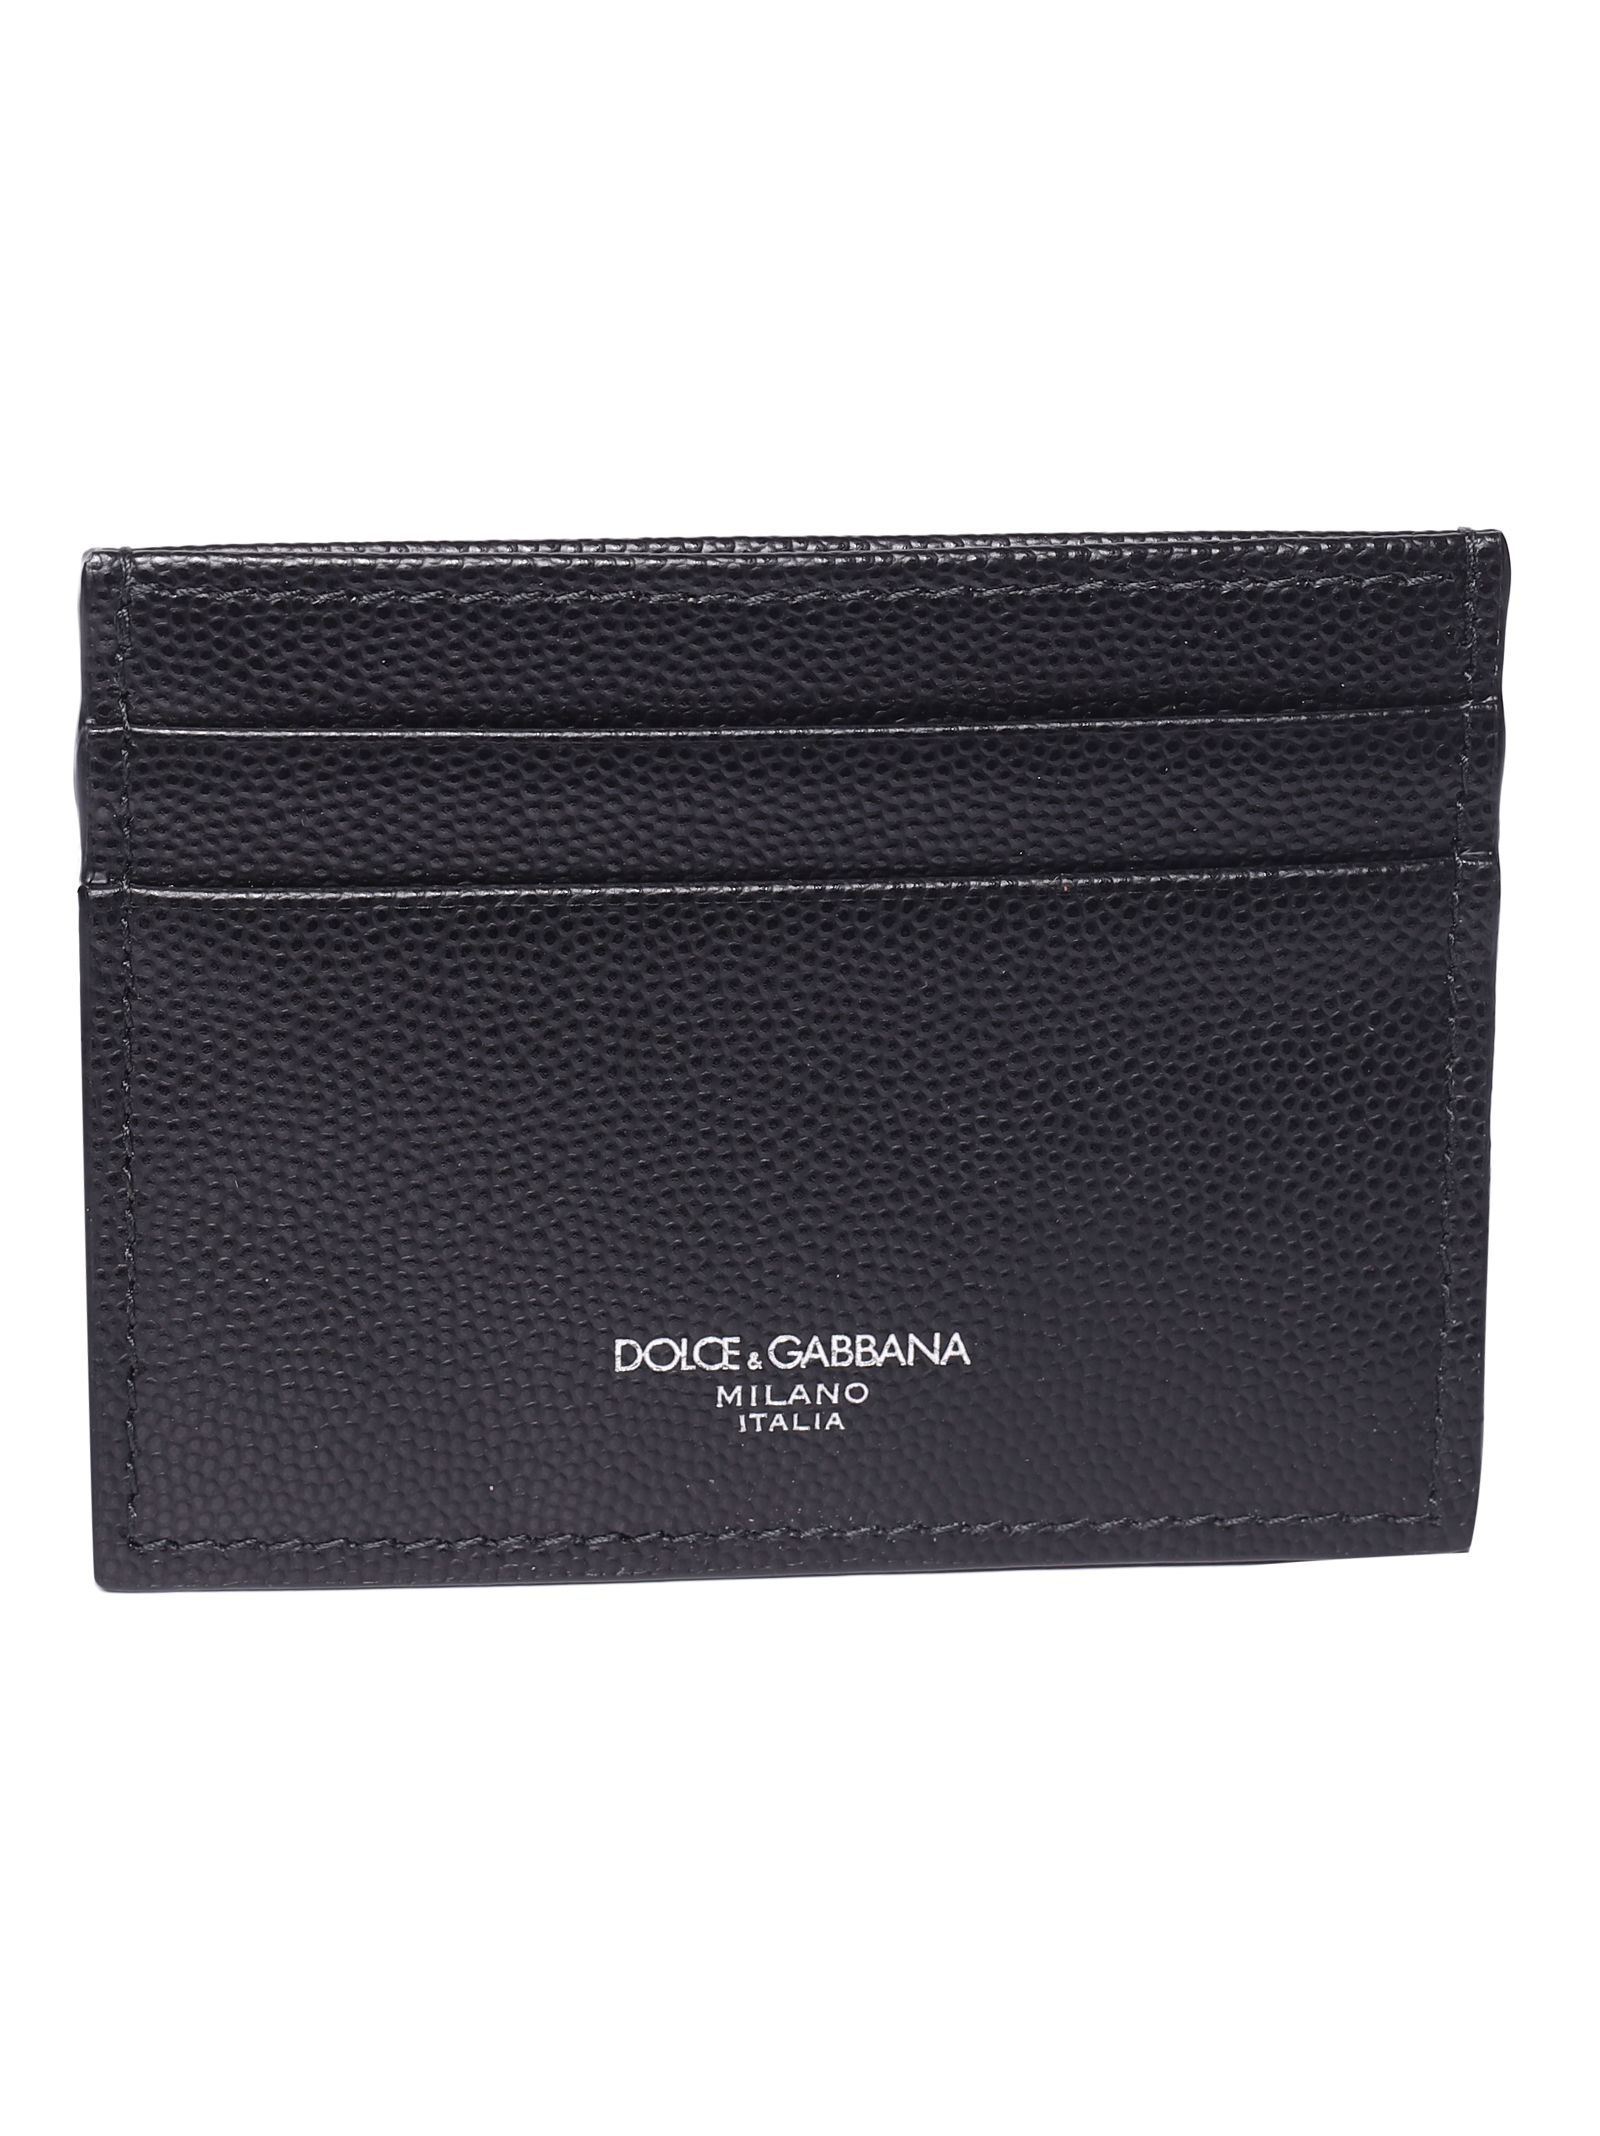 DOLCE & GABBANA Dolce & Gabbana Logo Print Cardholder,10930426